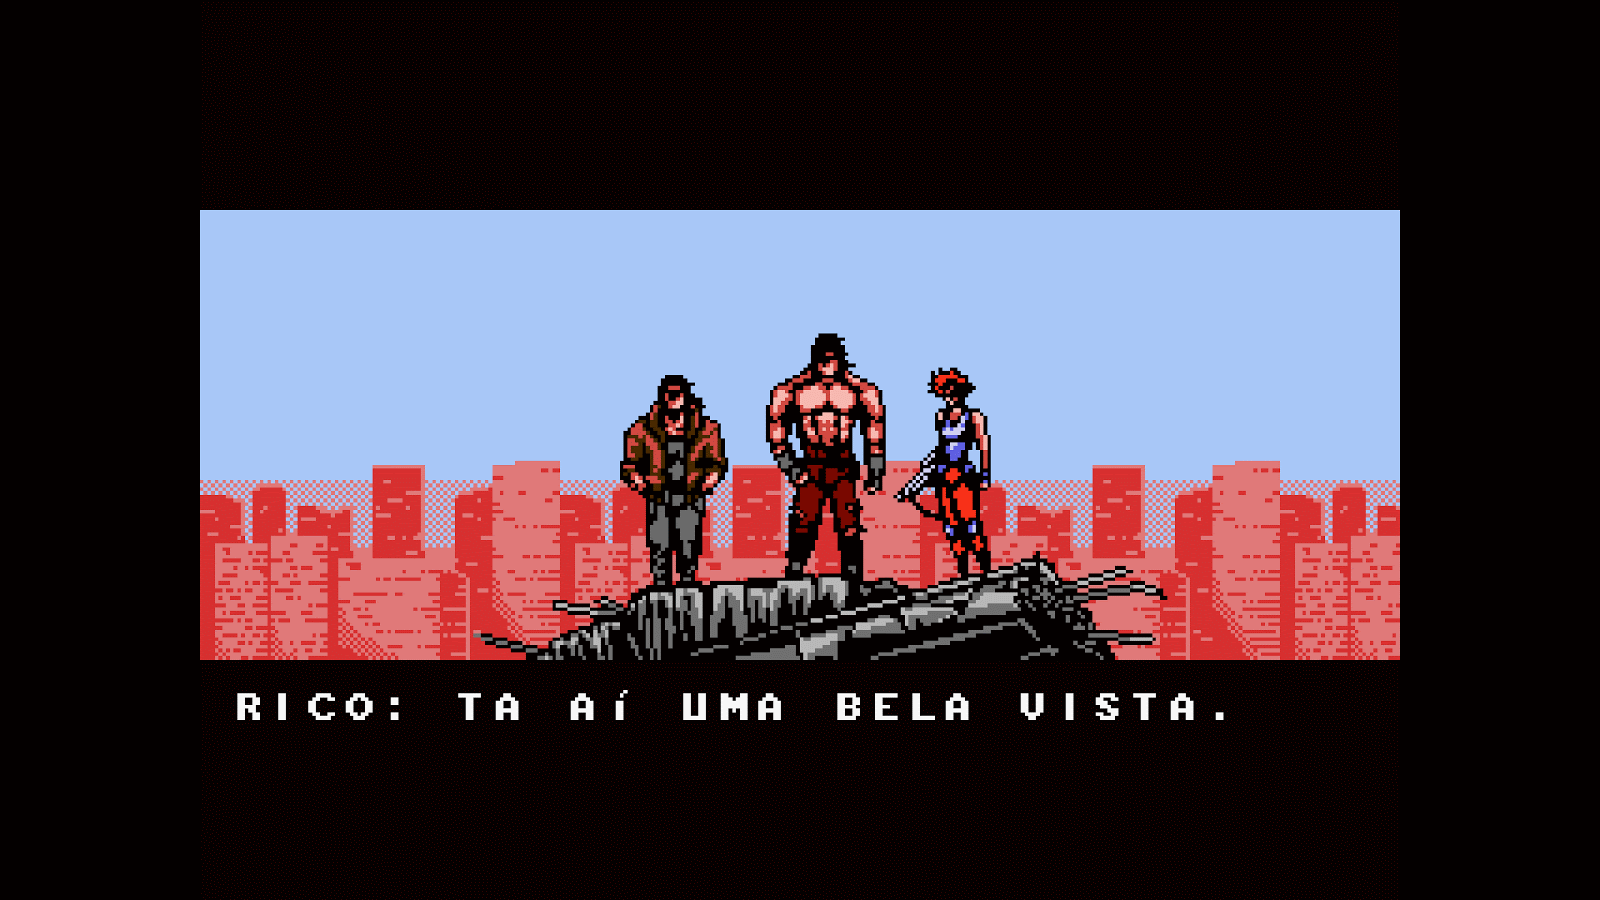 Rumor: Aniversário de 30 anos de Mortal Kombat poderá trazer novidades  nostálgicas – HOMÃO DE FERRO